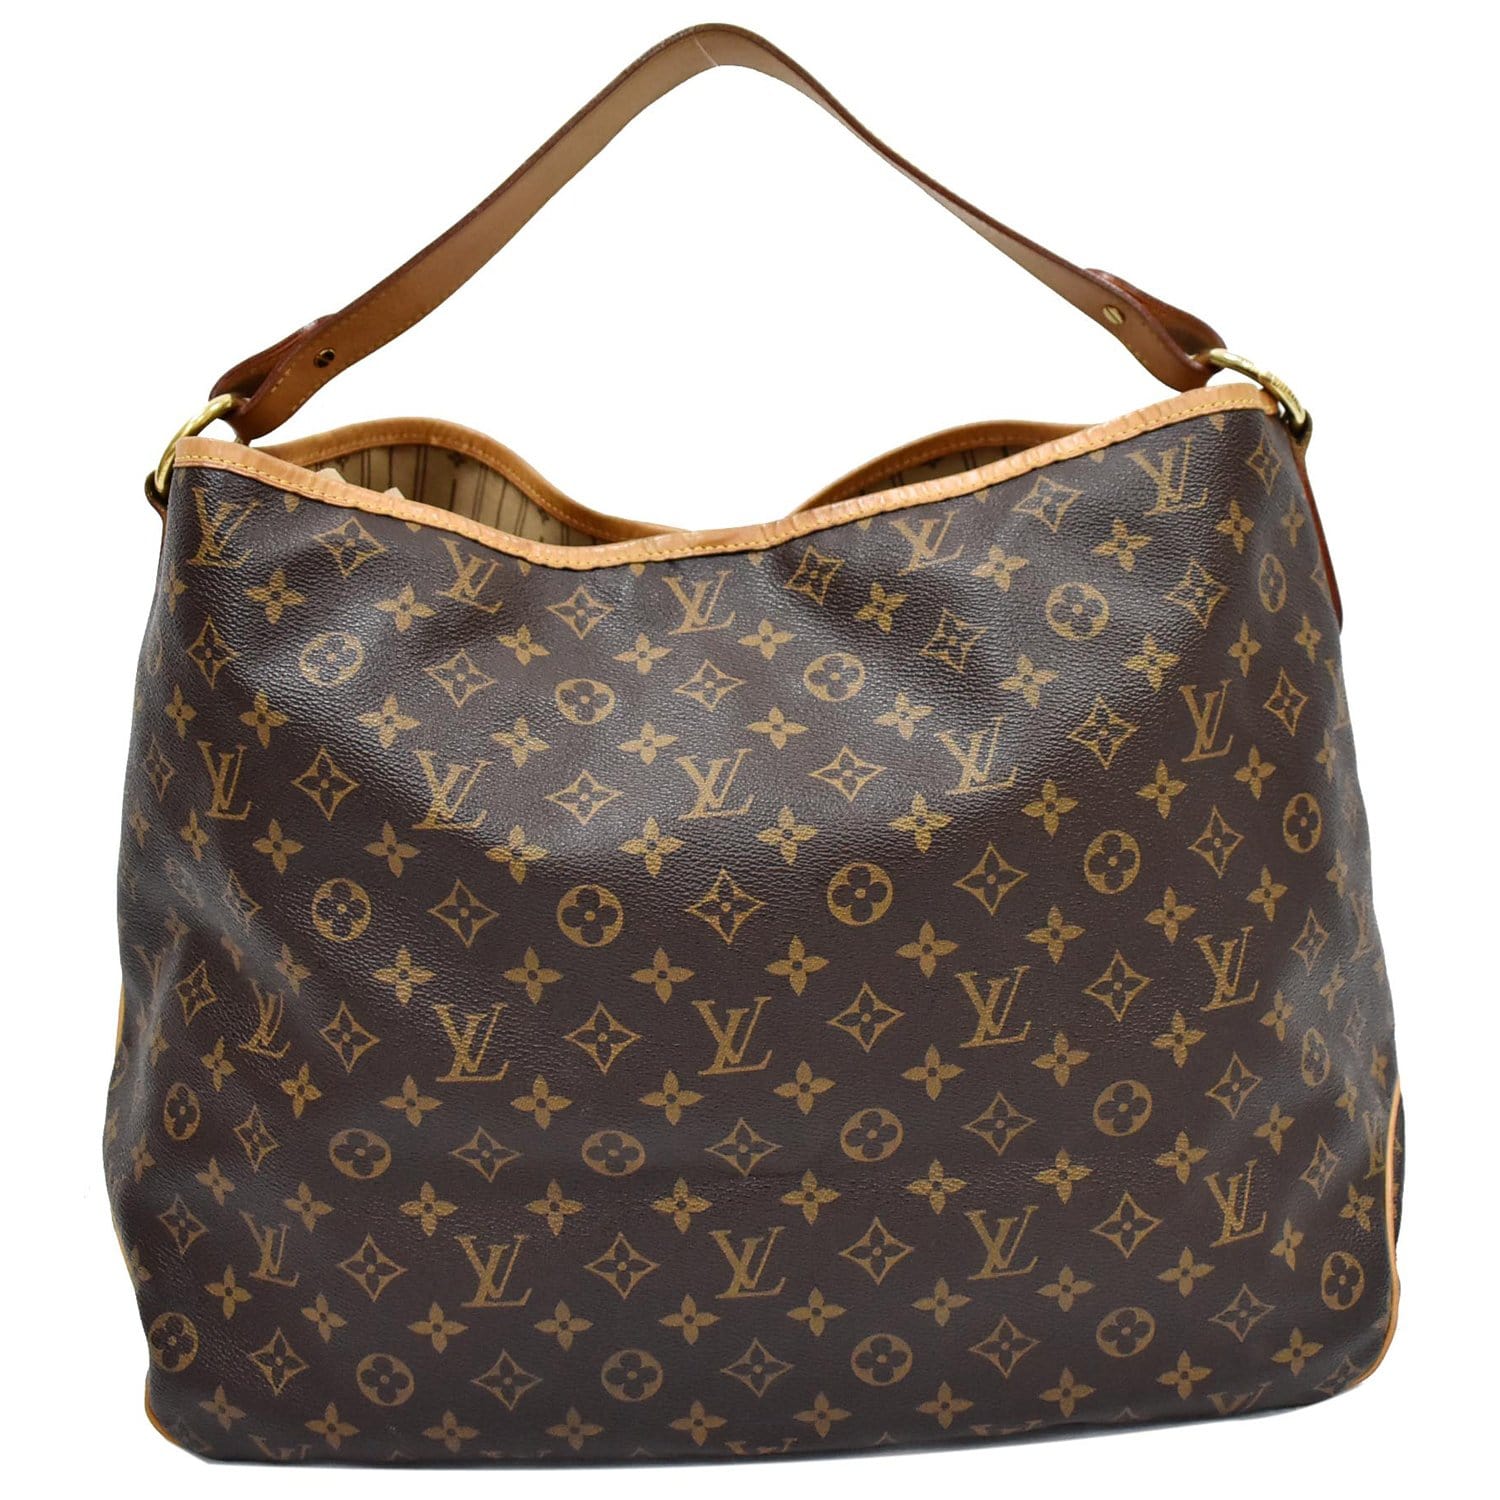 Louis Vuitton, Bags, Beautiful Authentic Louis Vuitton Delightful Gm  Monogram